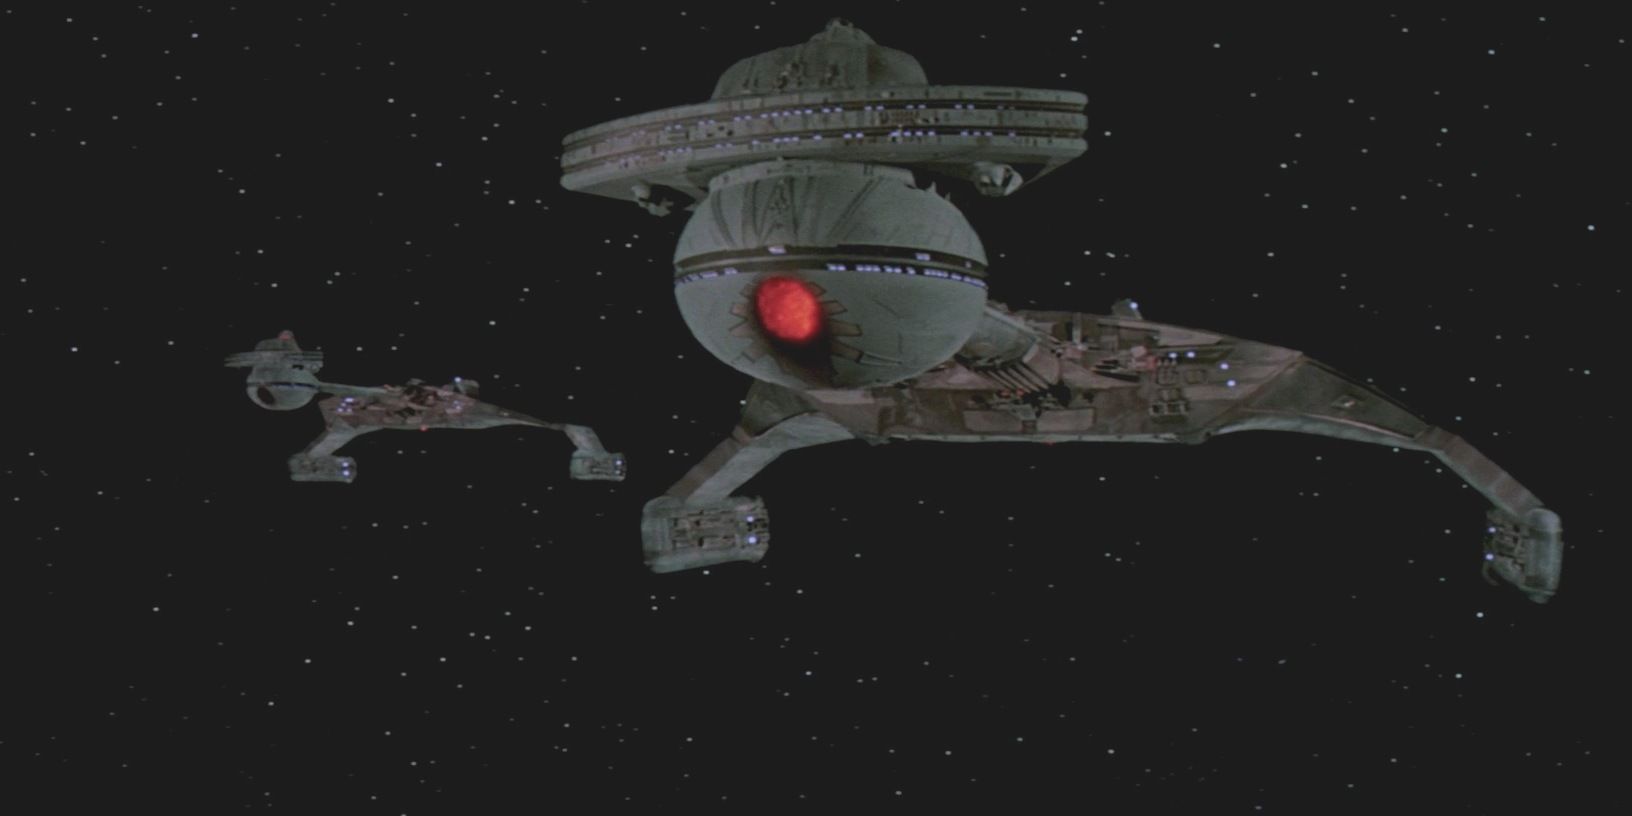 Klingon battlecruisers